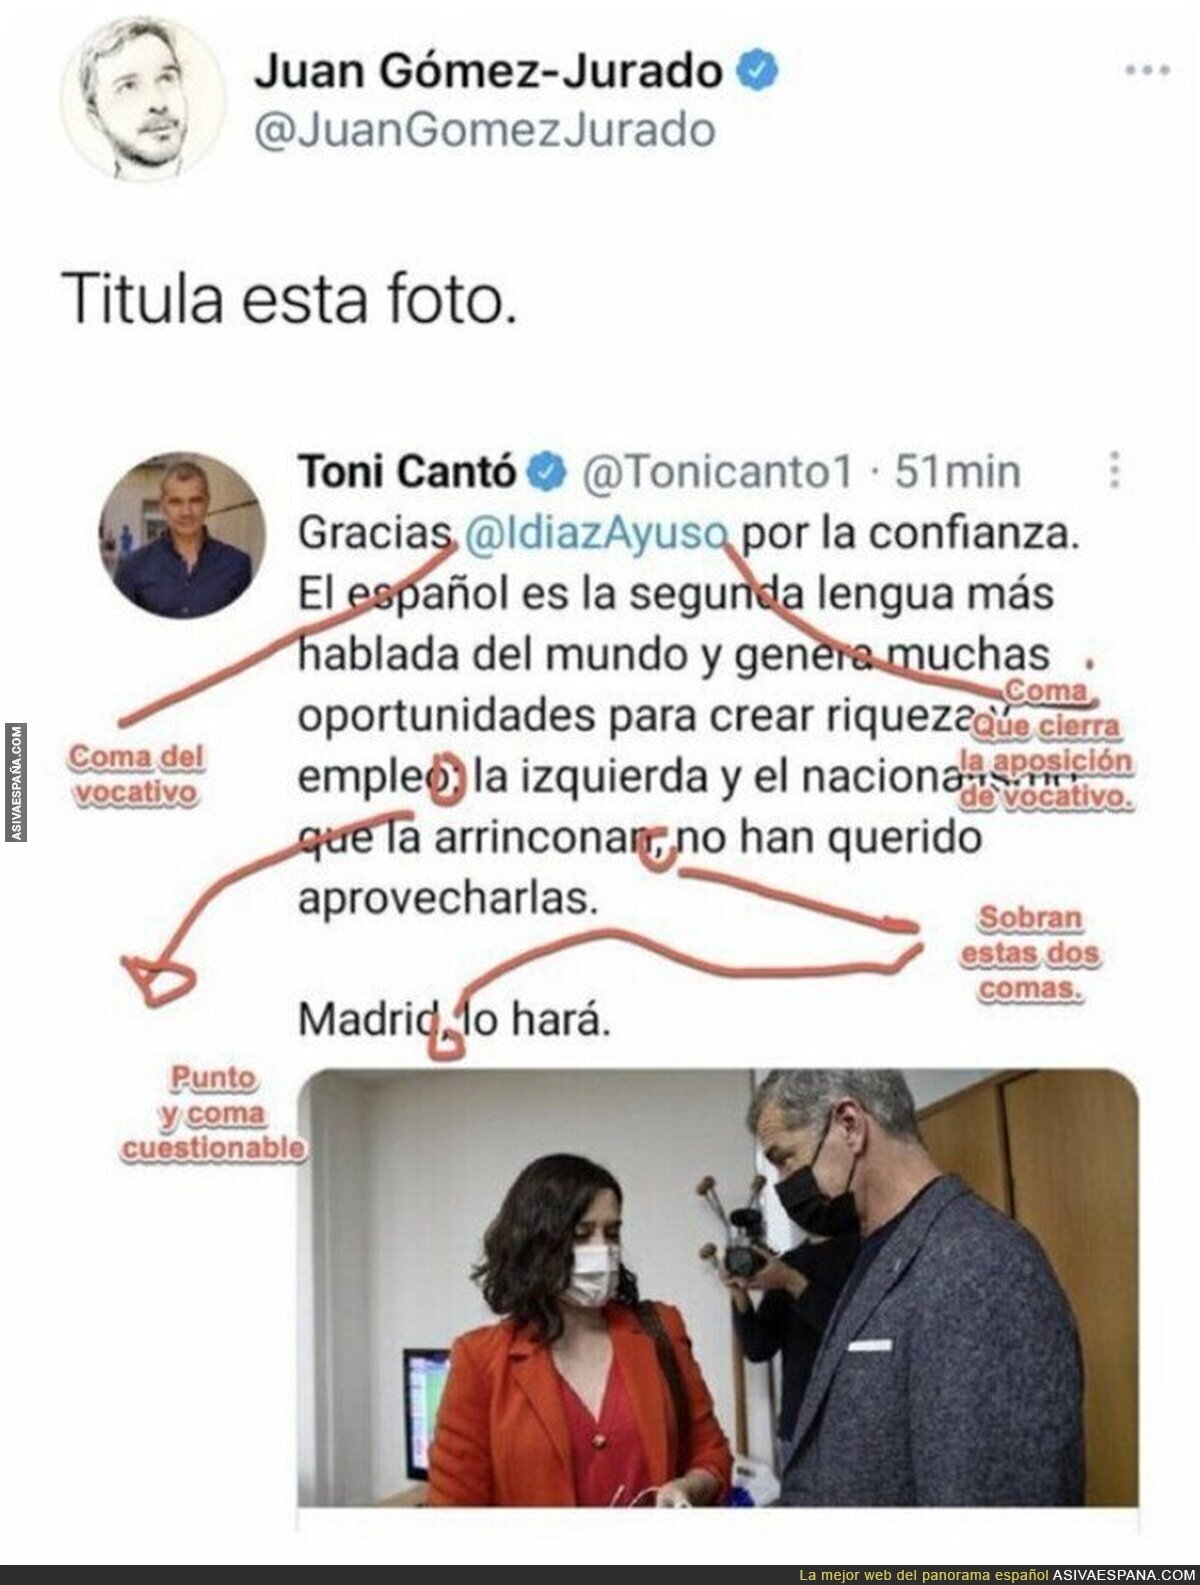 El escritor Juan Gómez-Jurado deja por los suelos a Toni Cantó por este tuit lleno de faltas